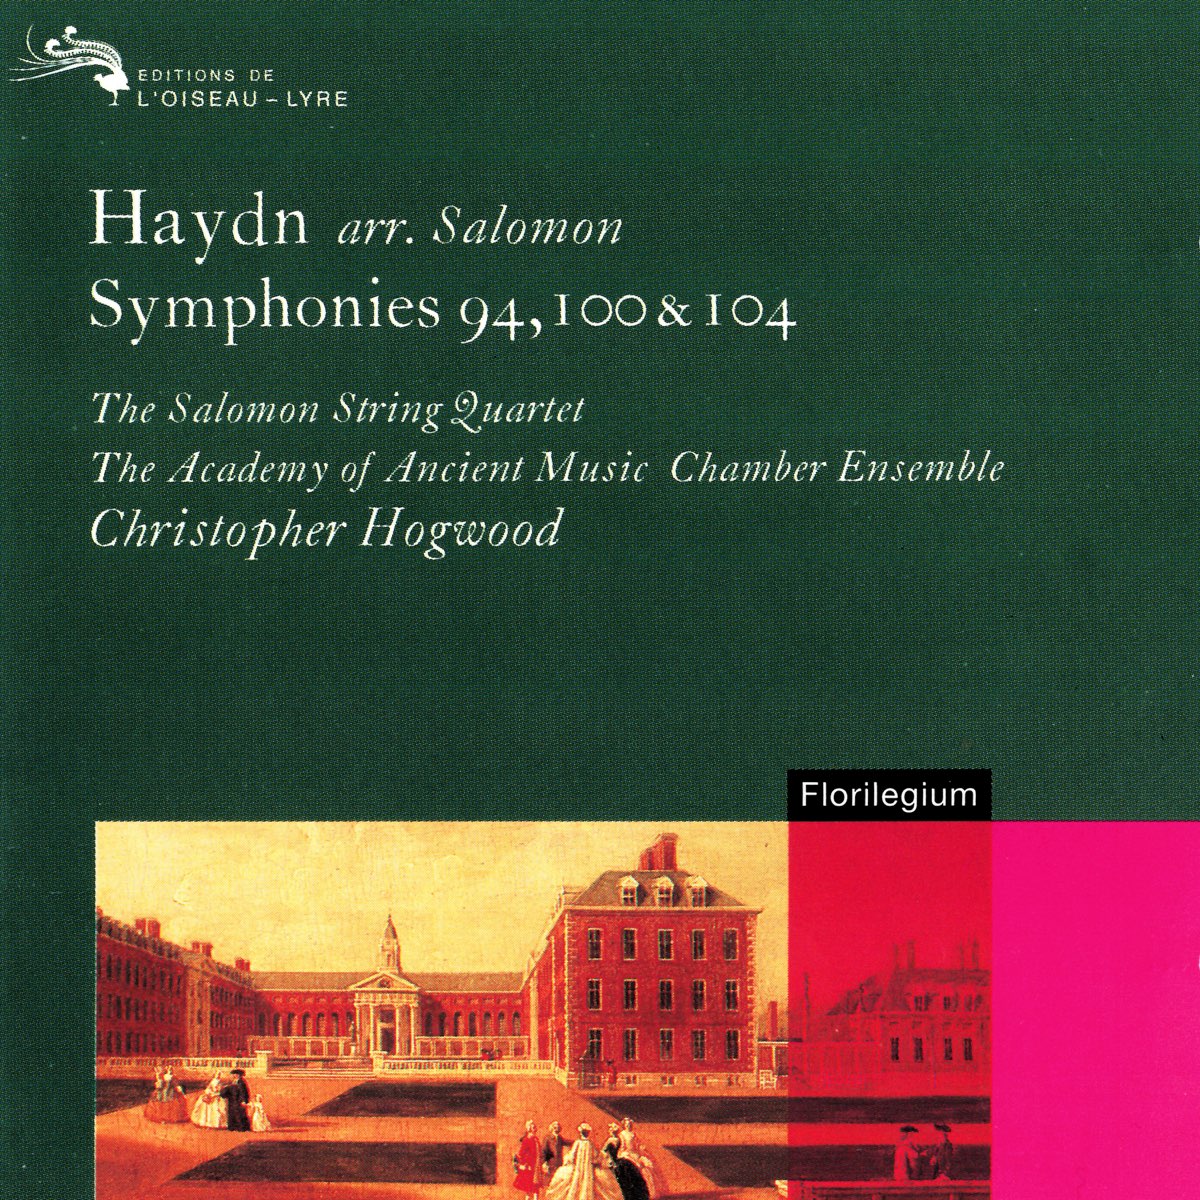 Haydn Arr. Salomon: Symphonies Nos. 94, 100 & 104 - クリストファー・ホグウッド &  エンシェント室内管アンサンブルのアルバム - Apple Music